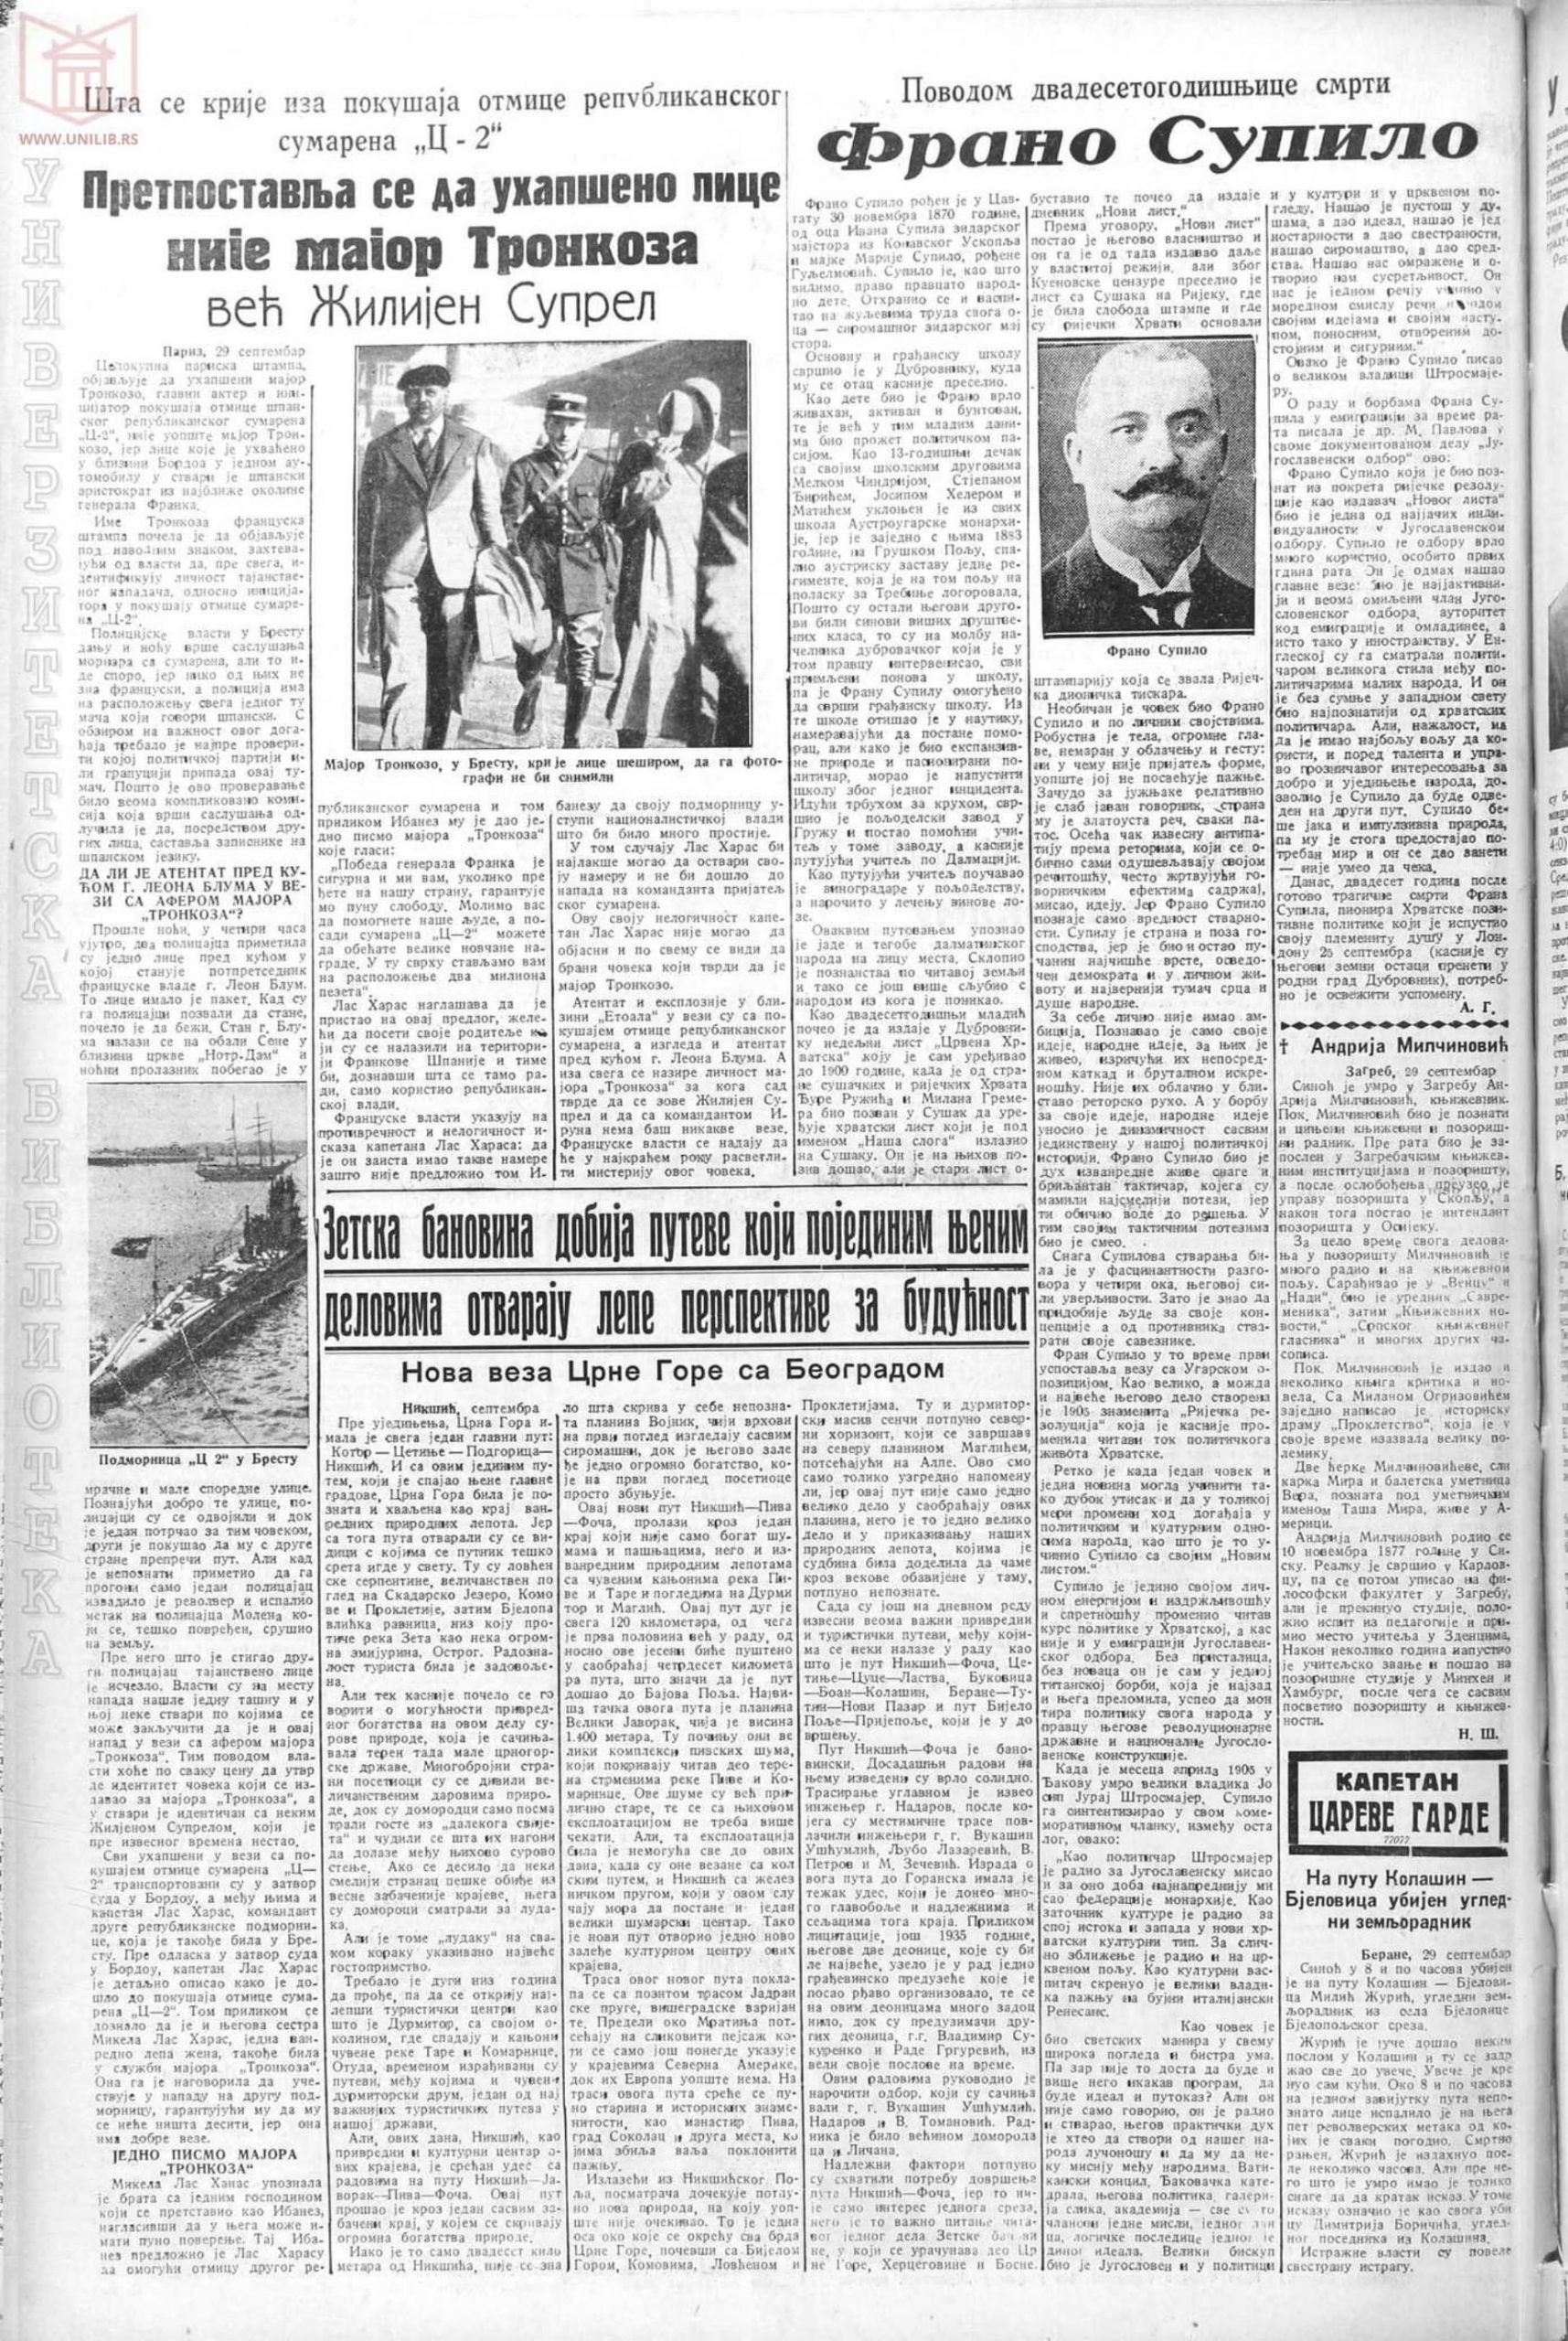 Pravda 30.09.1937 p12-1